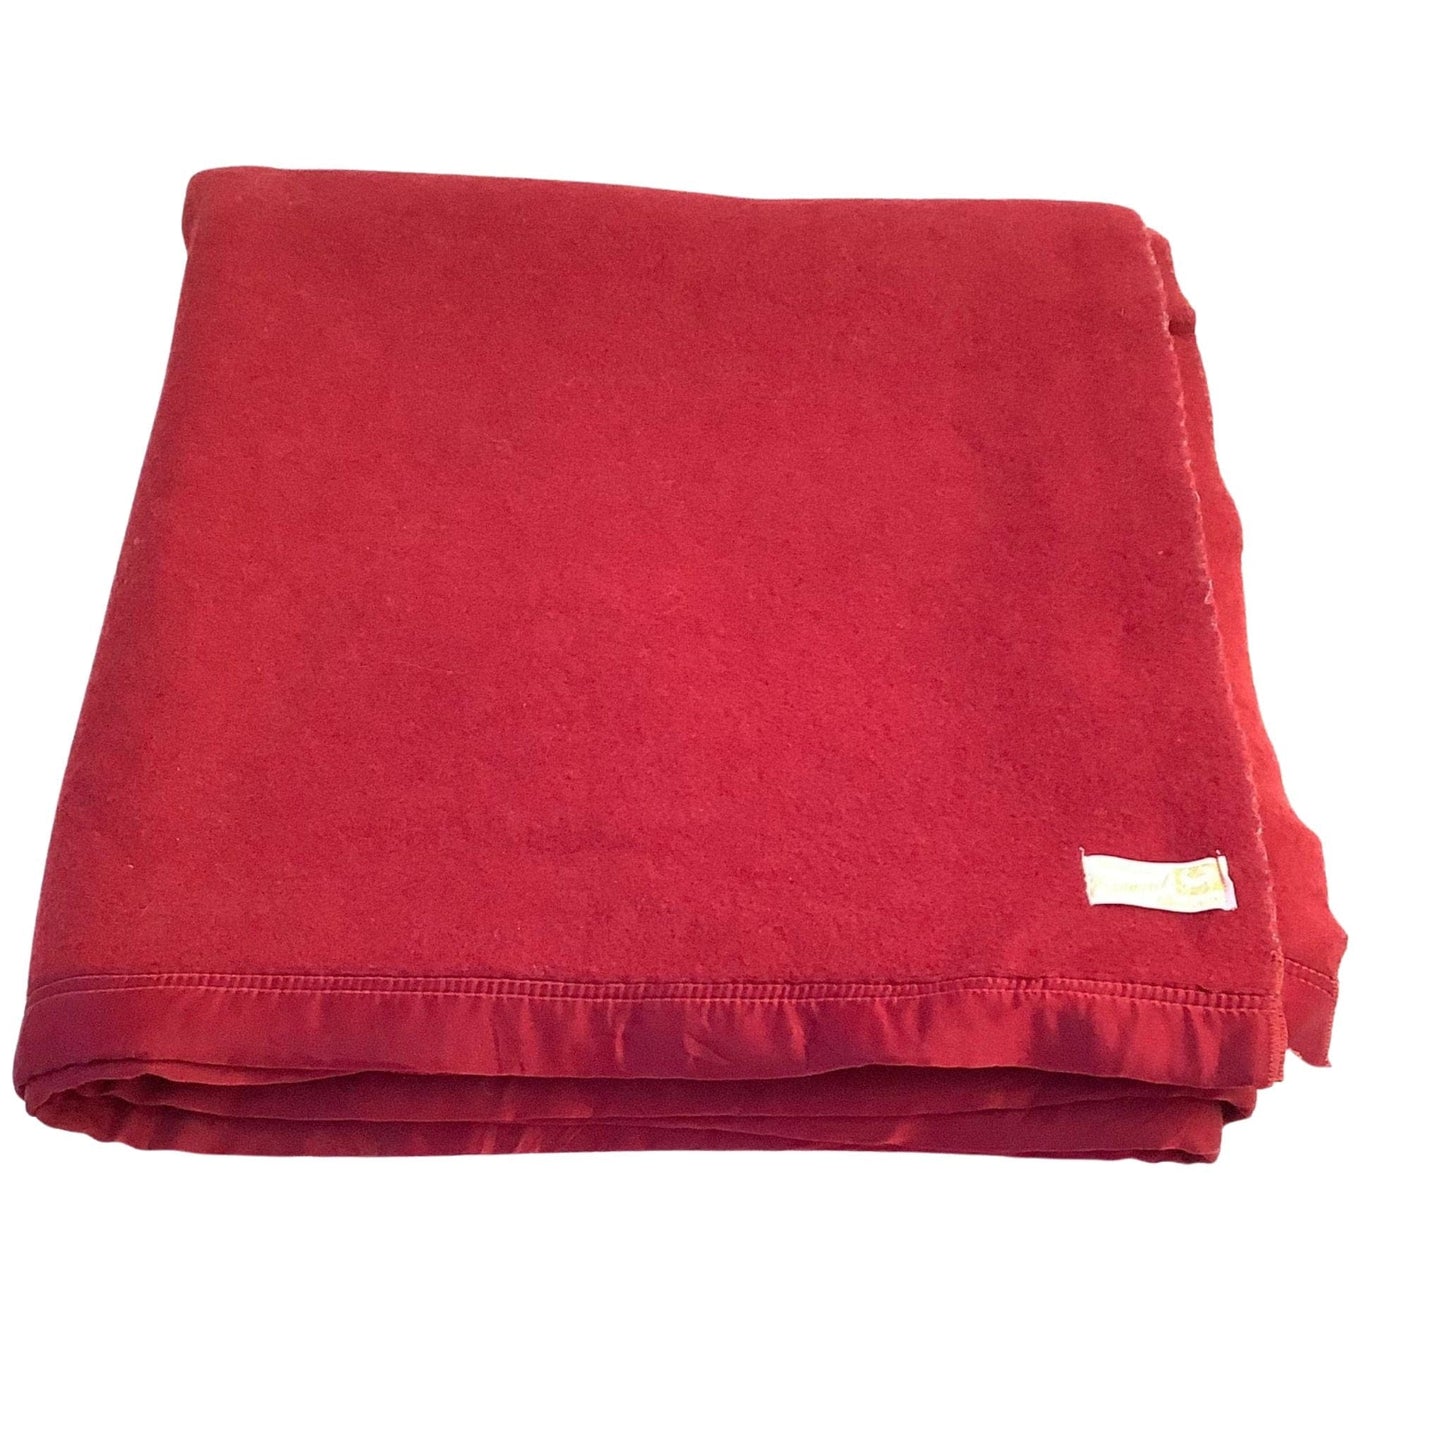 1950s Edmonds Wool Blanket Red / Wool / Vintage 1950s